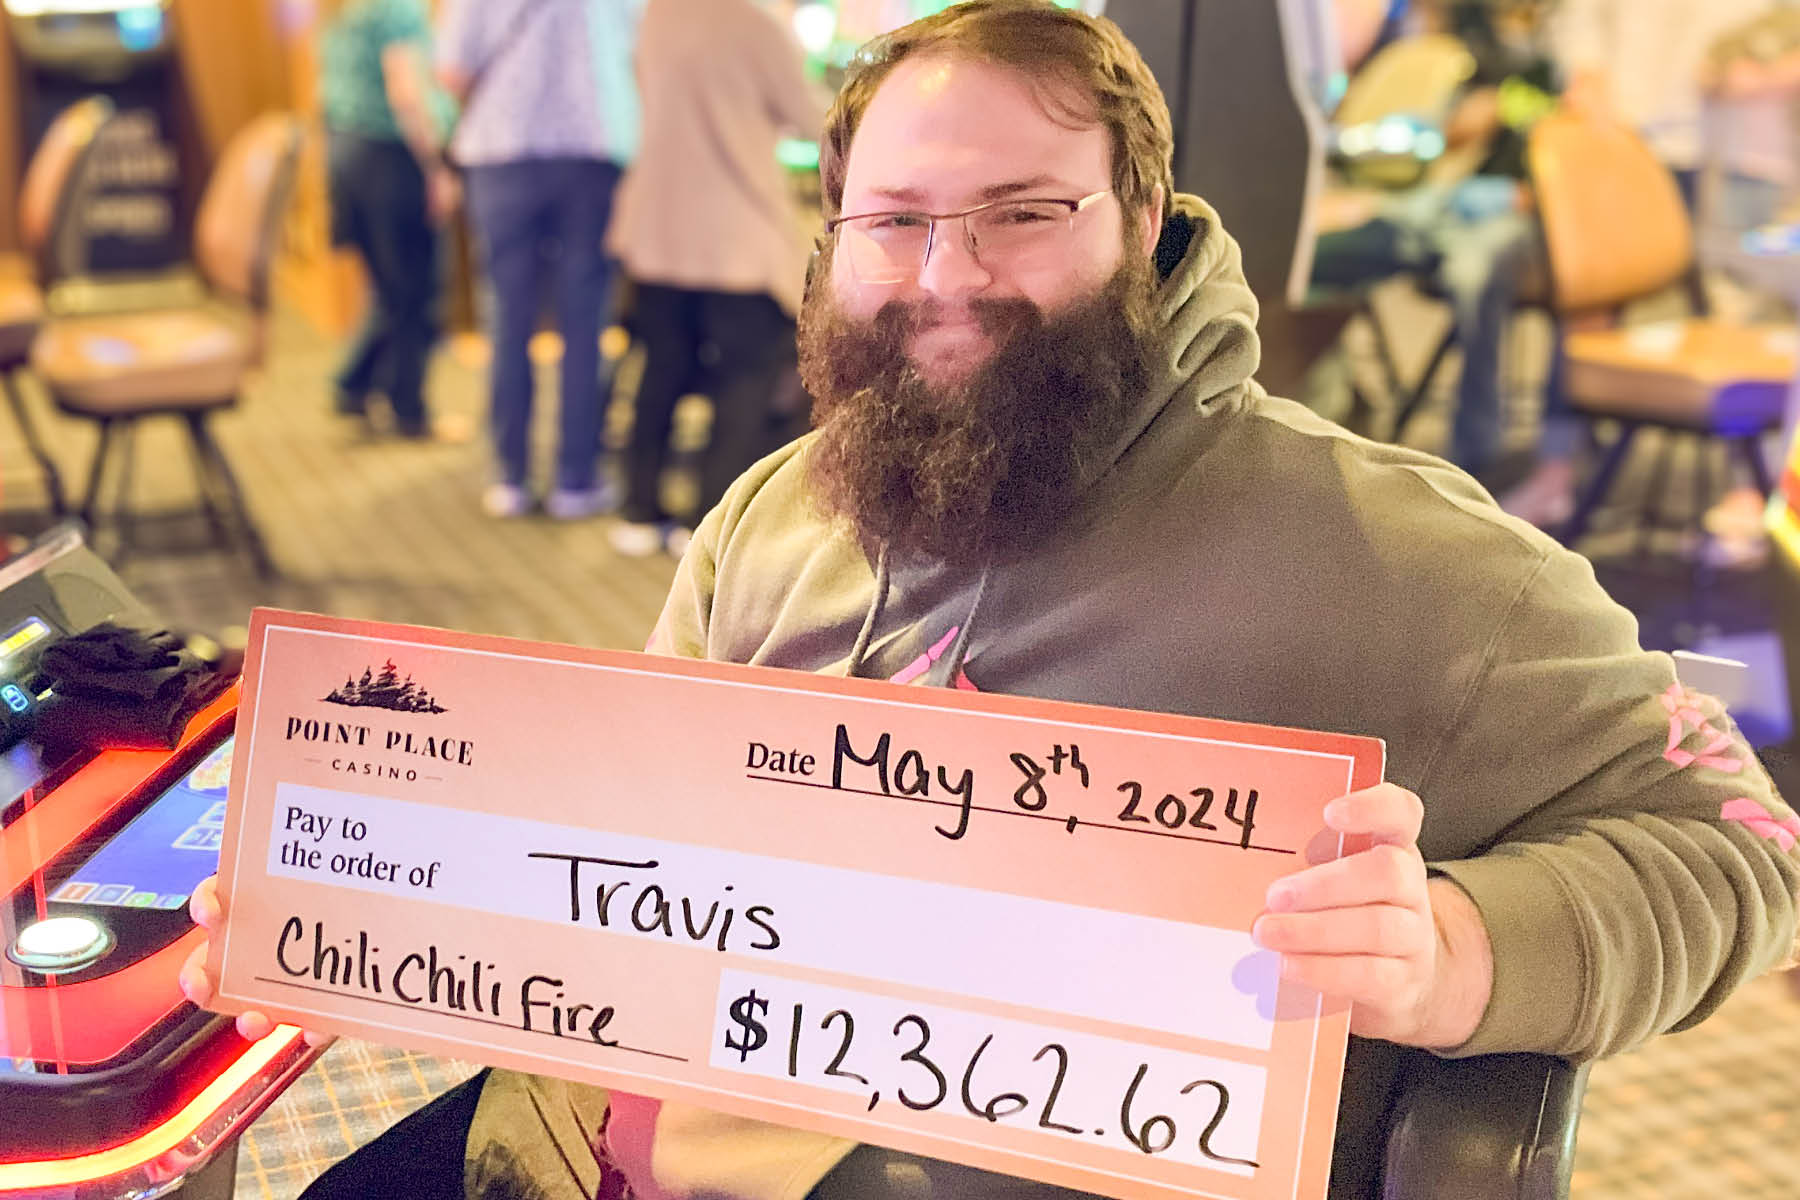 Travis won $12,362